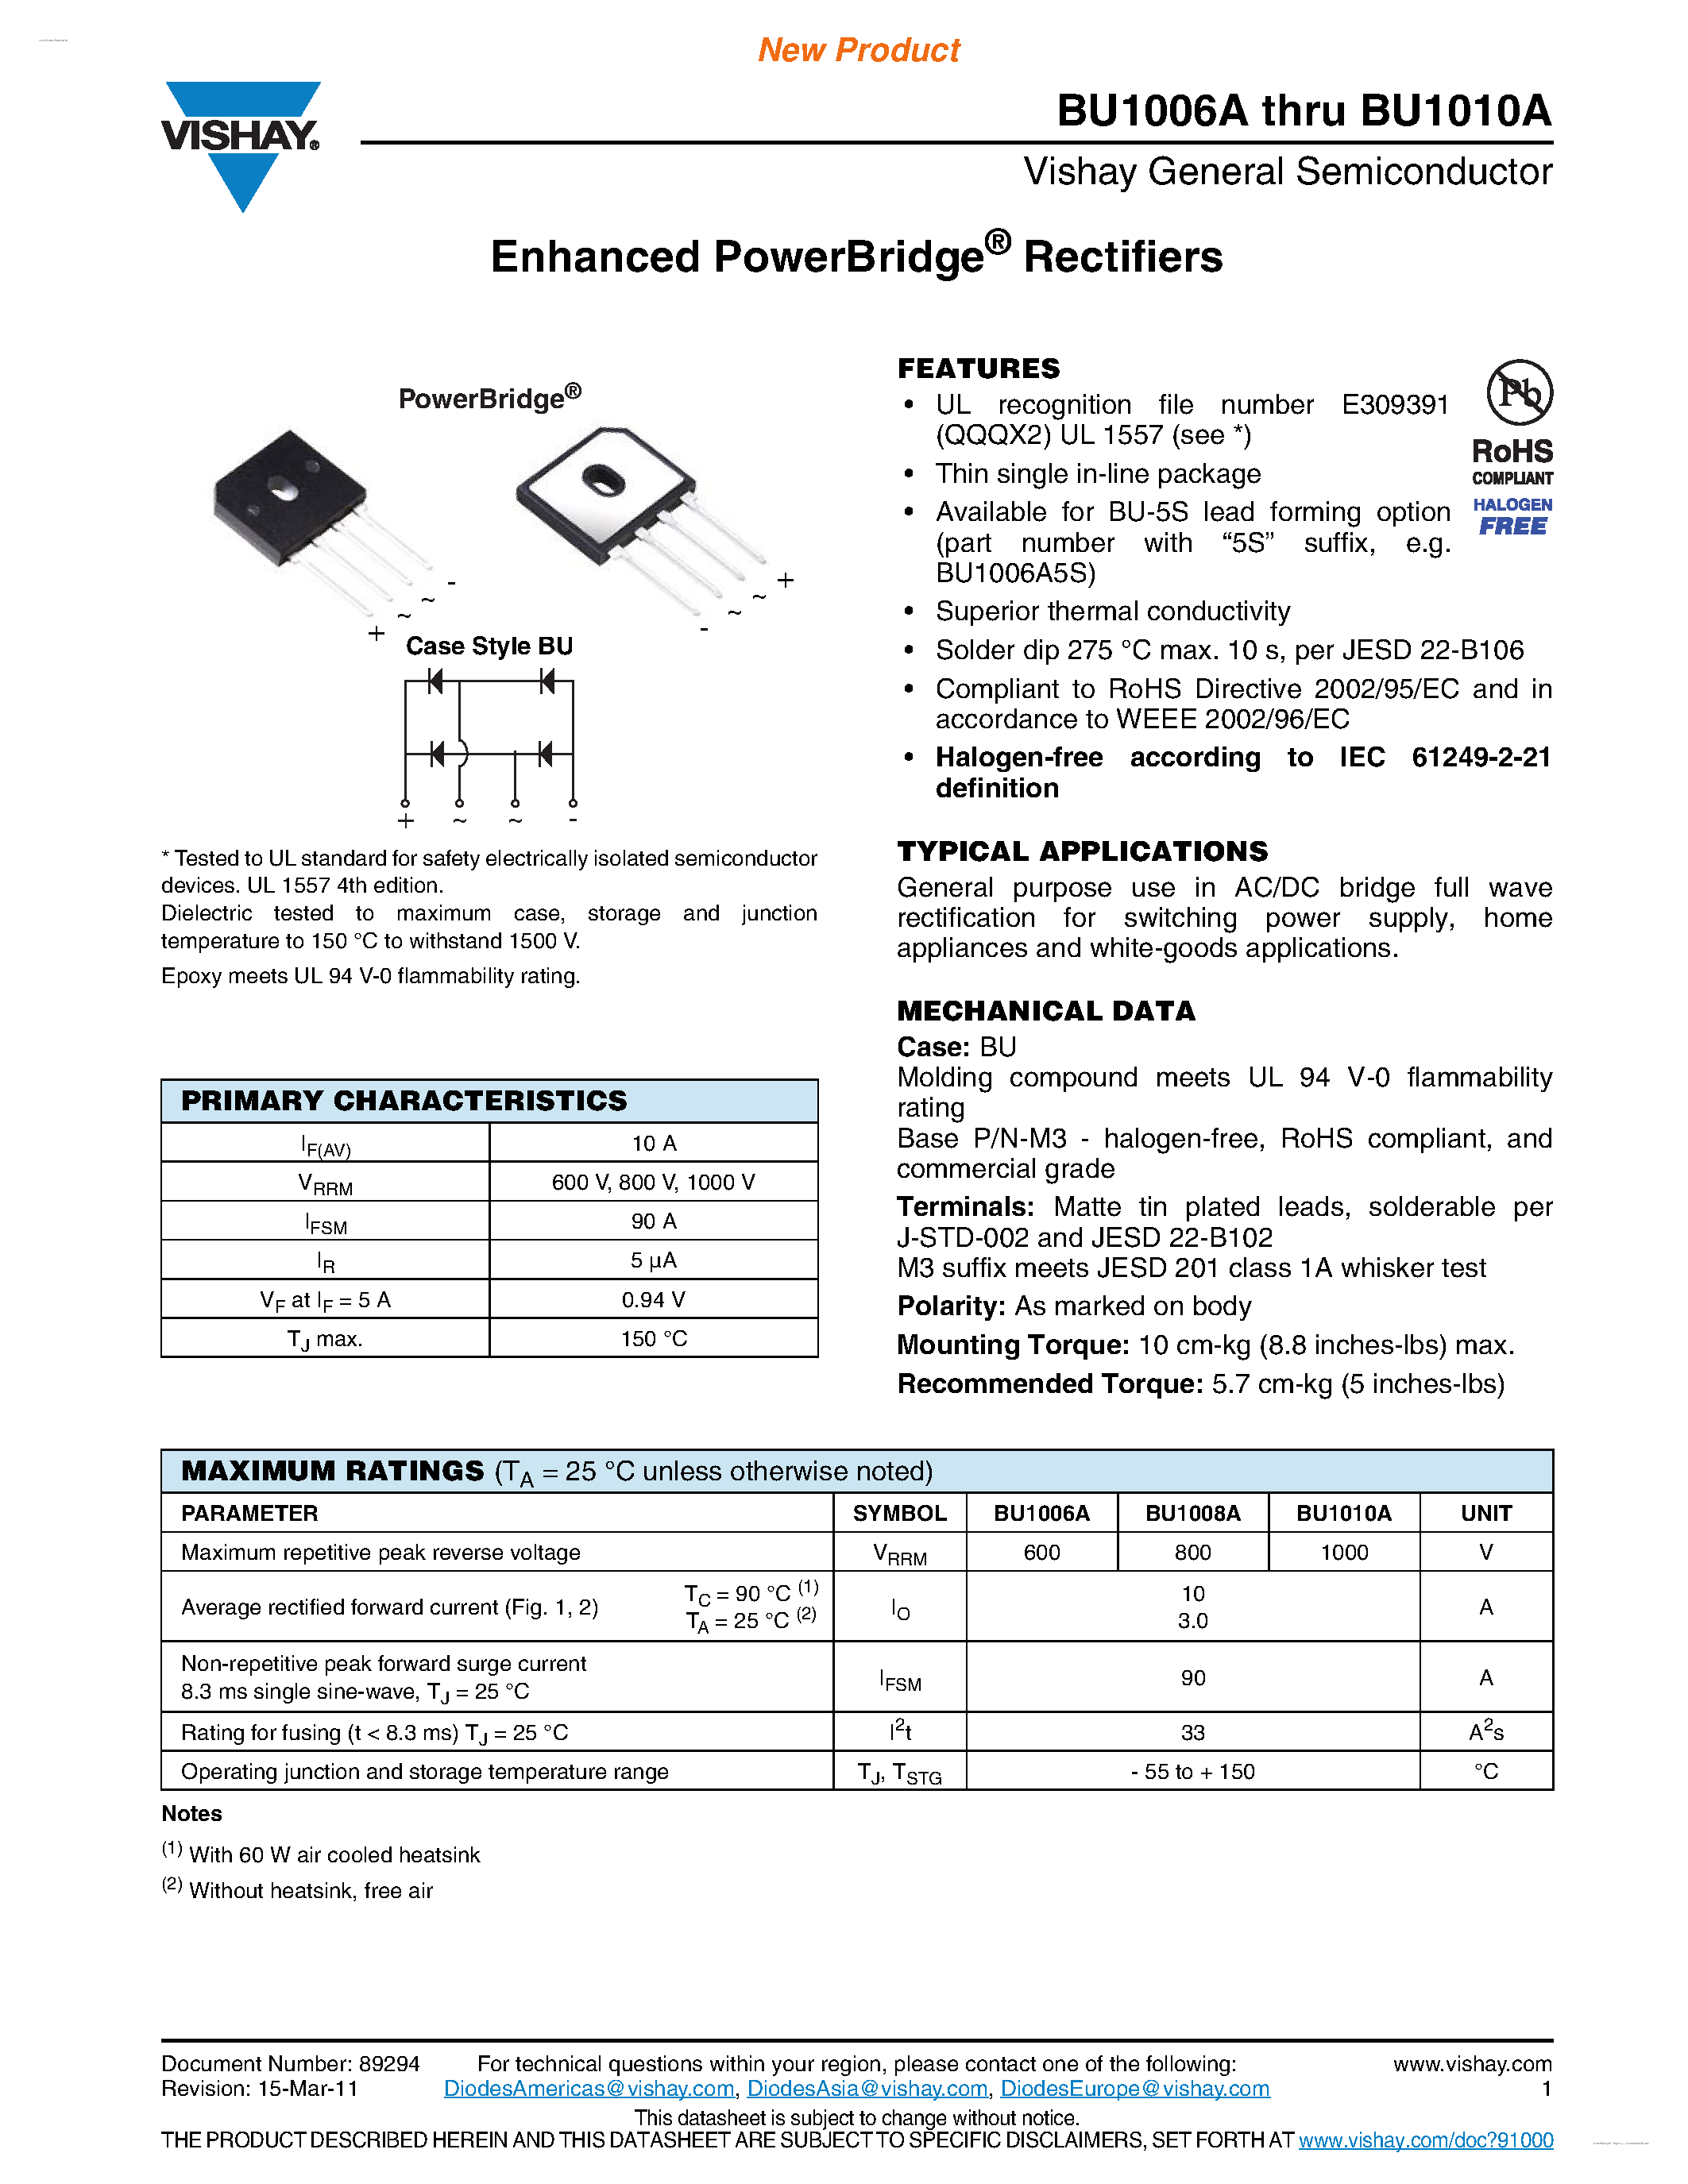 Datasheet BU1006A - (BU1006A - BU1010A) Enhanced PowerBridge Rectifiers page 1